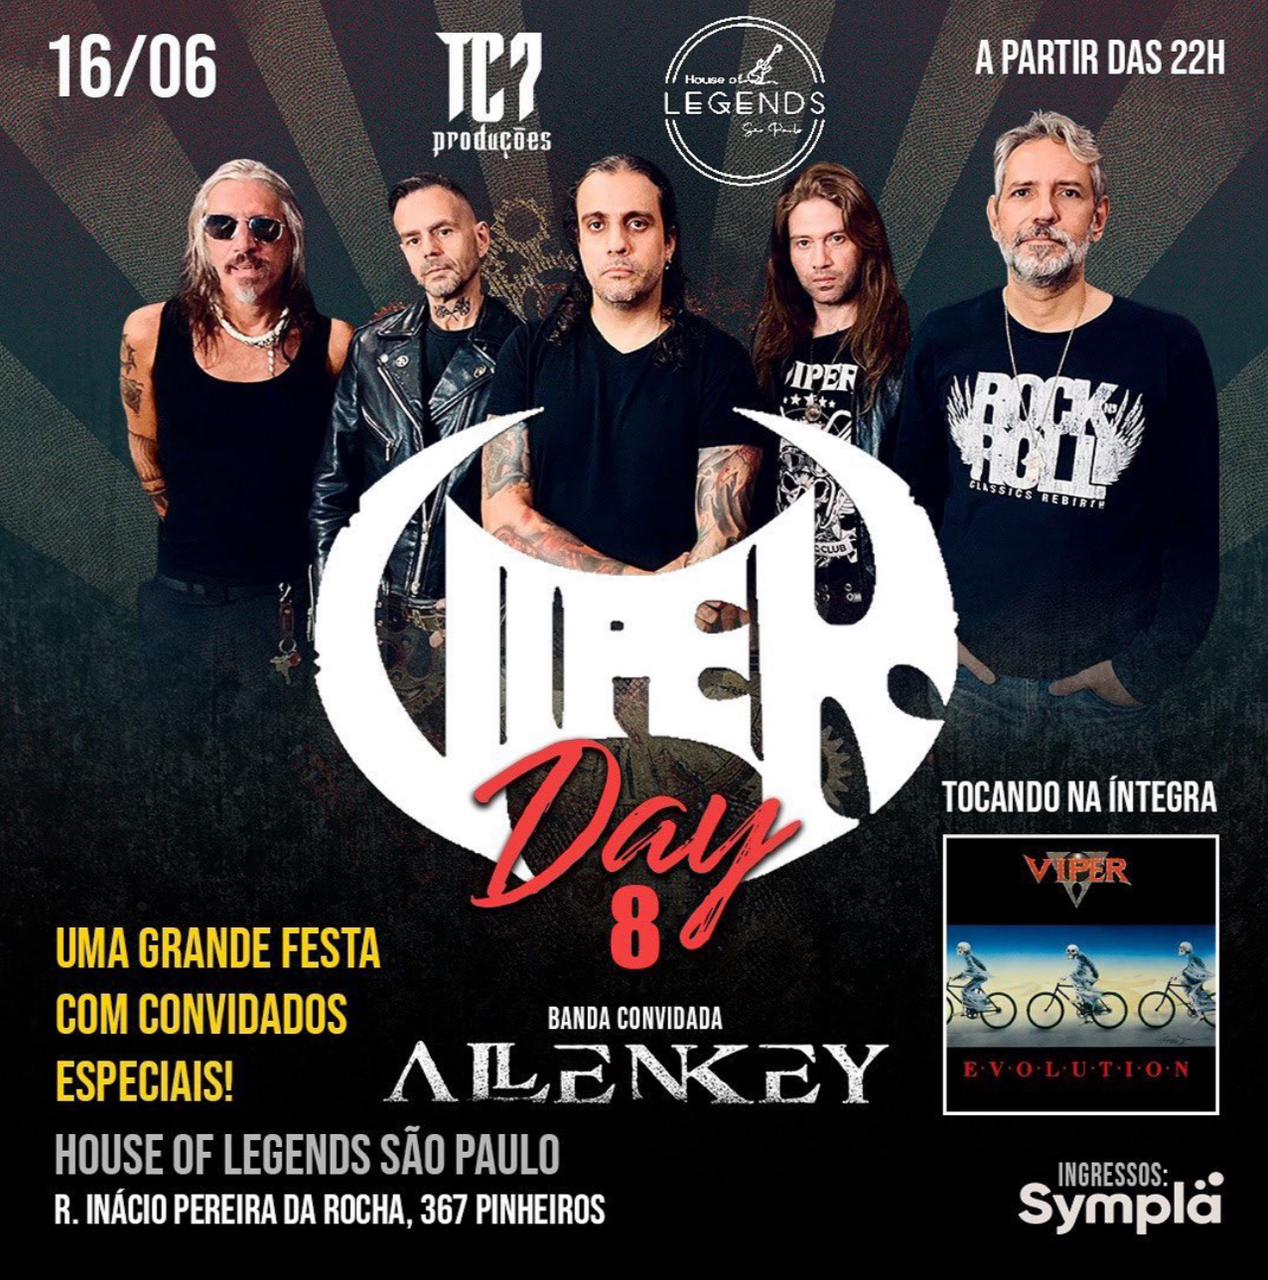 Viper Day 8 com Allen Key, Viper e convidados especiais em São Paulo-SP dia 16.06